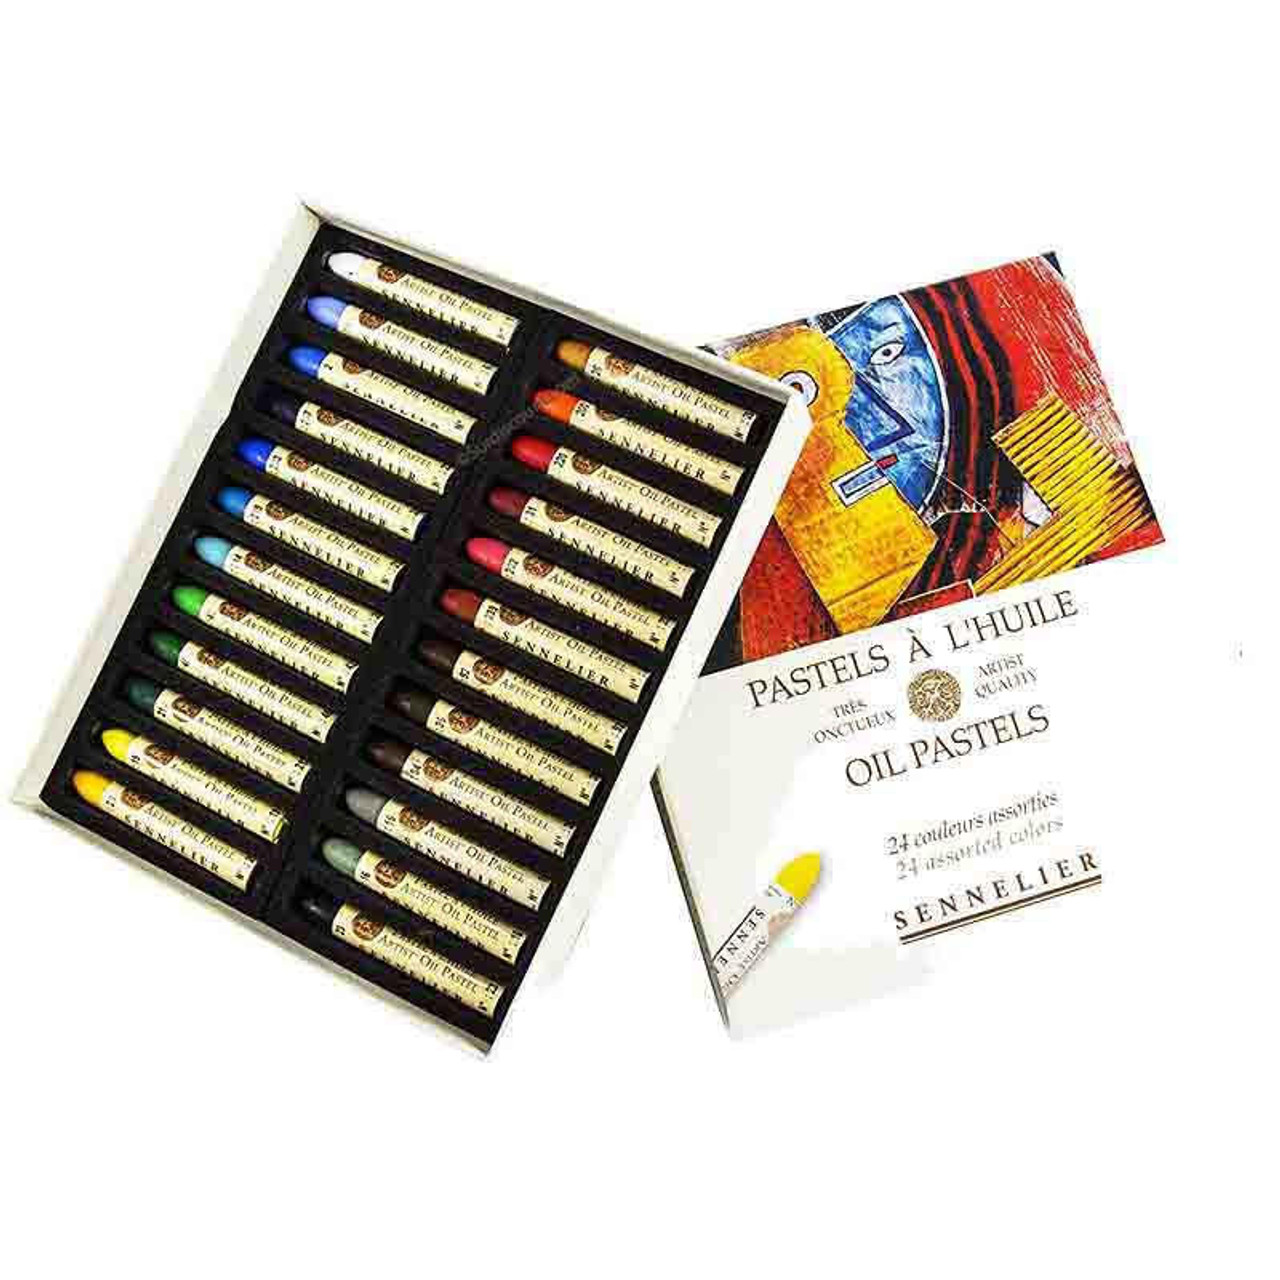 Sennelier Oil Pastel Set - 24-Color Set